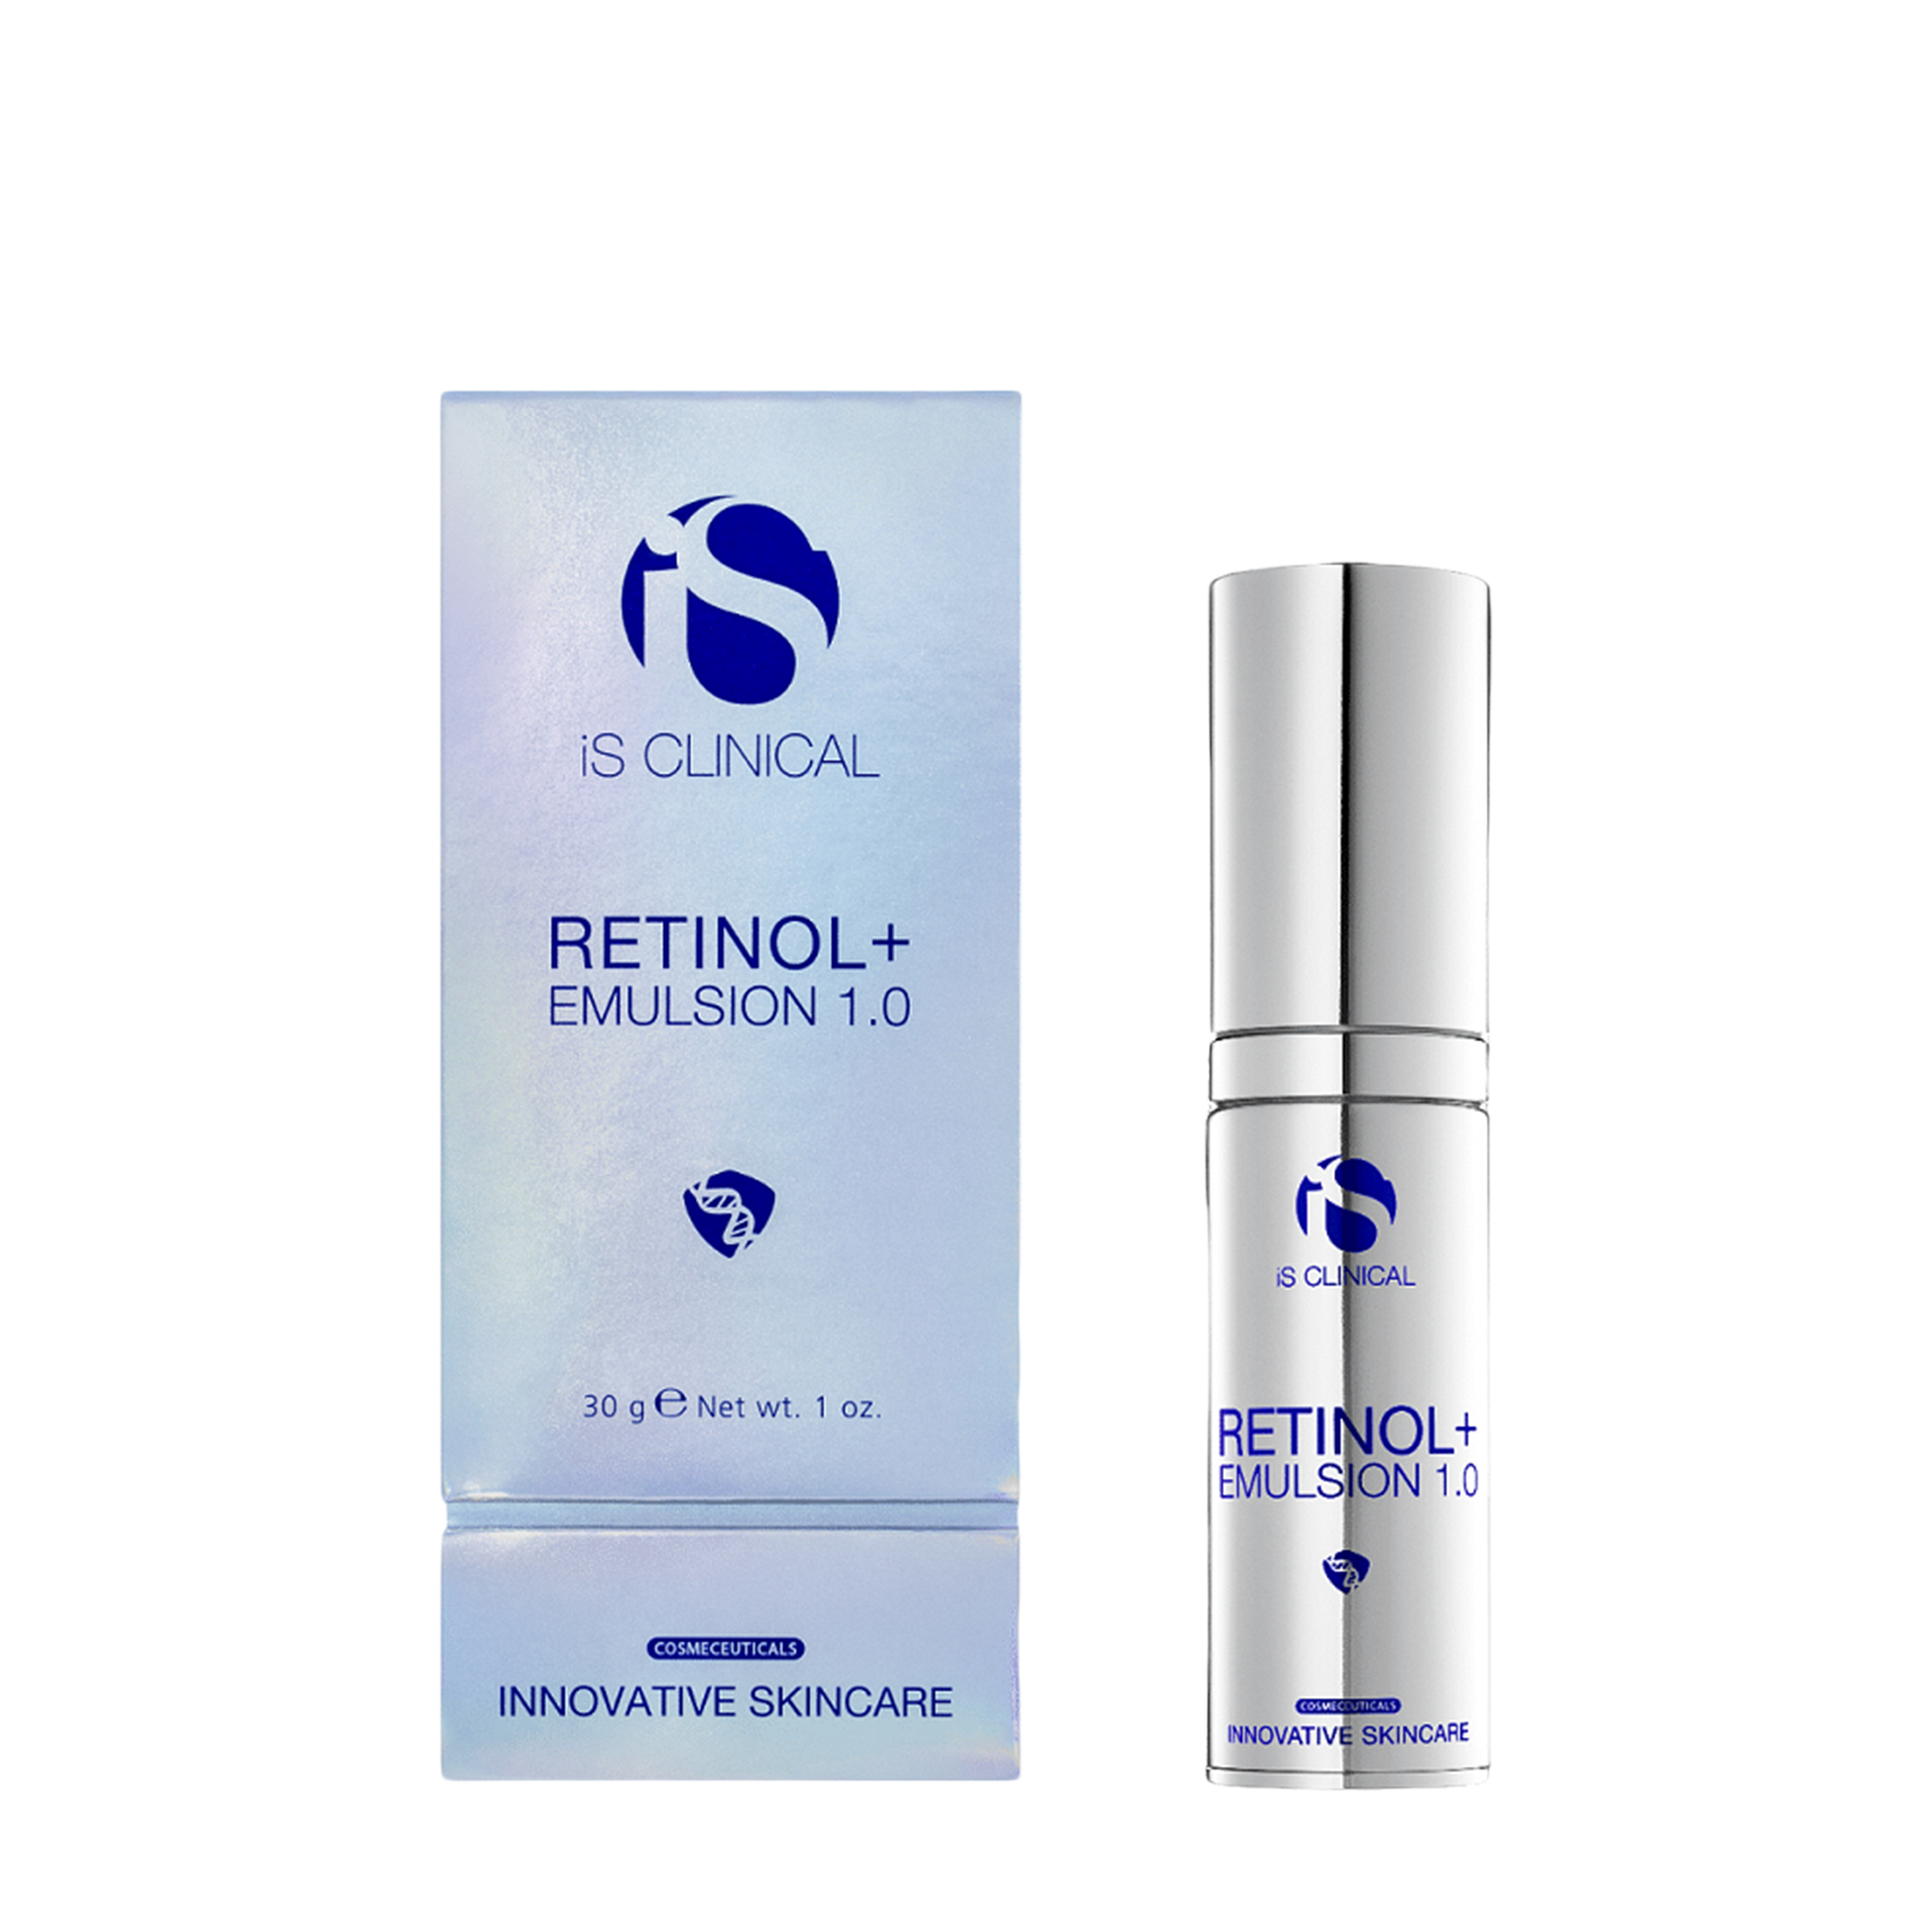 Is Clinical Is Clinical Восстанавливающая эмульсия с 1% ретинола для лица Retinol + Emulsion 1.0